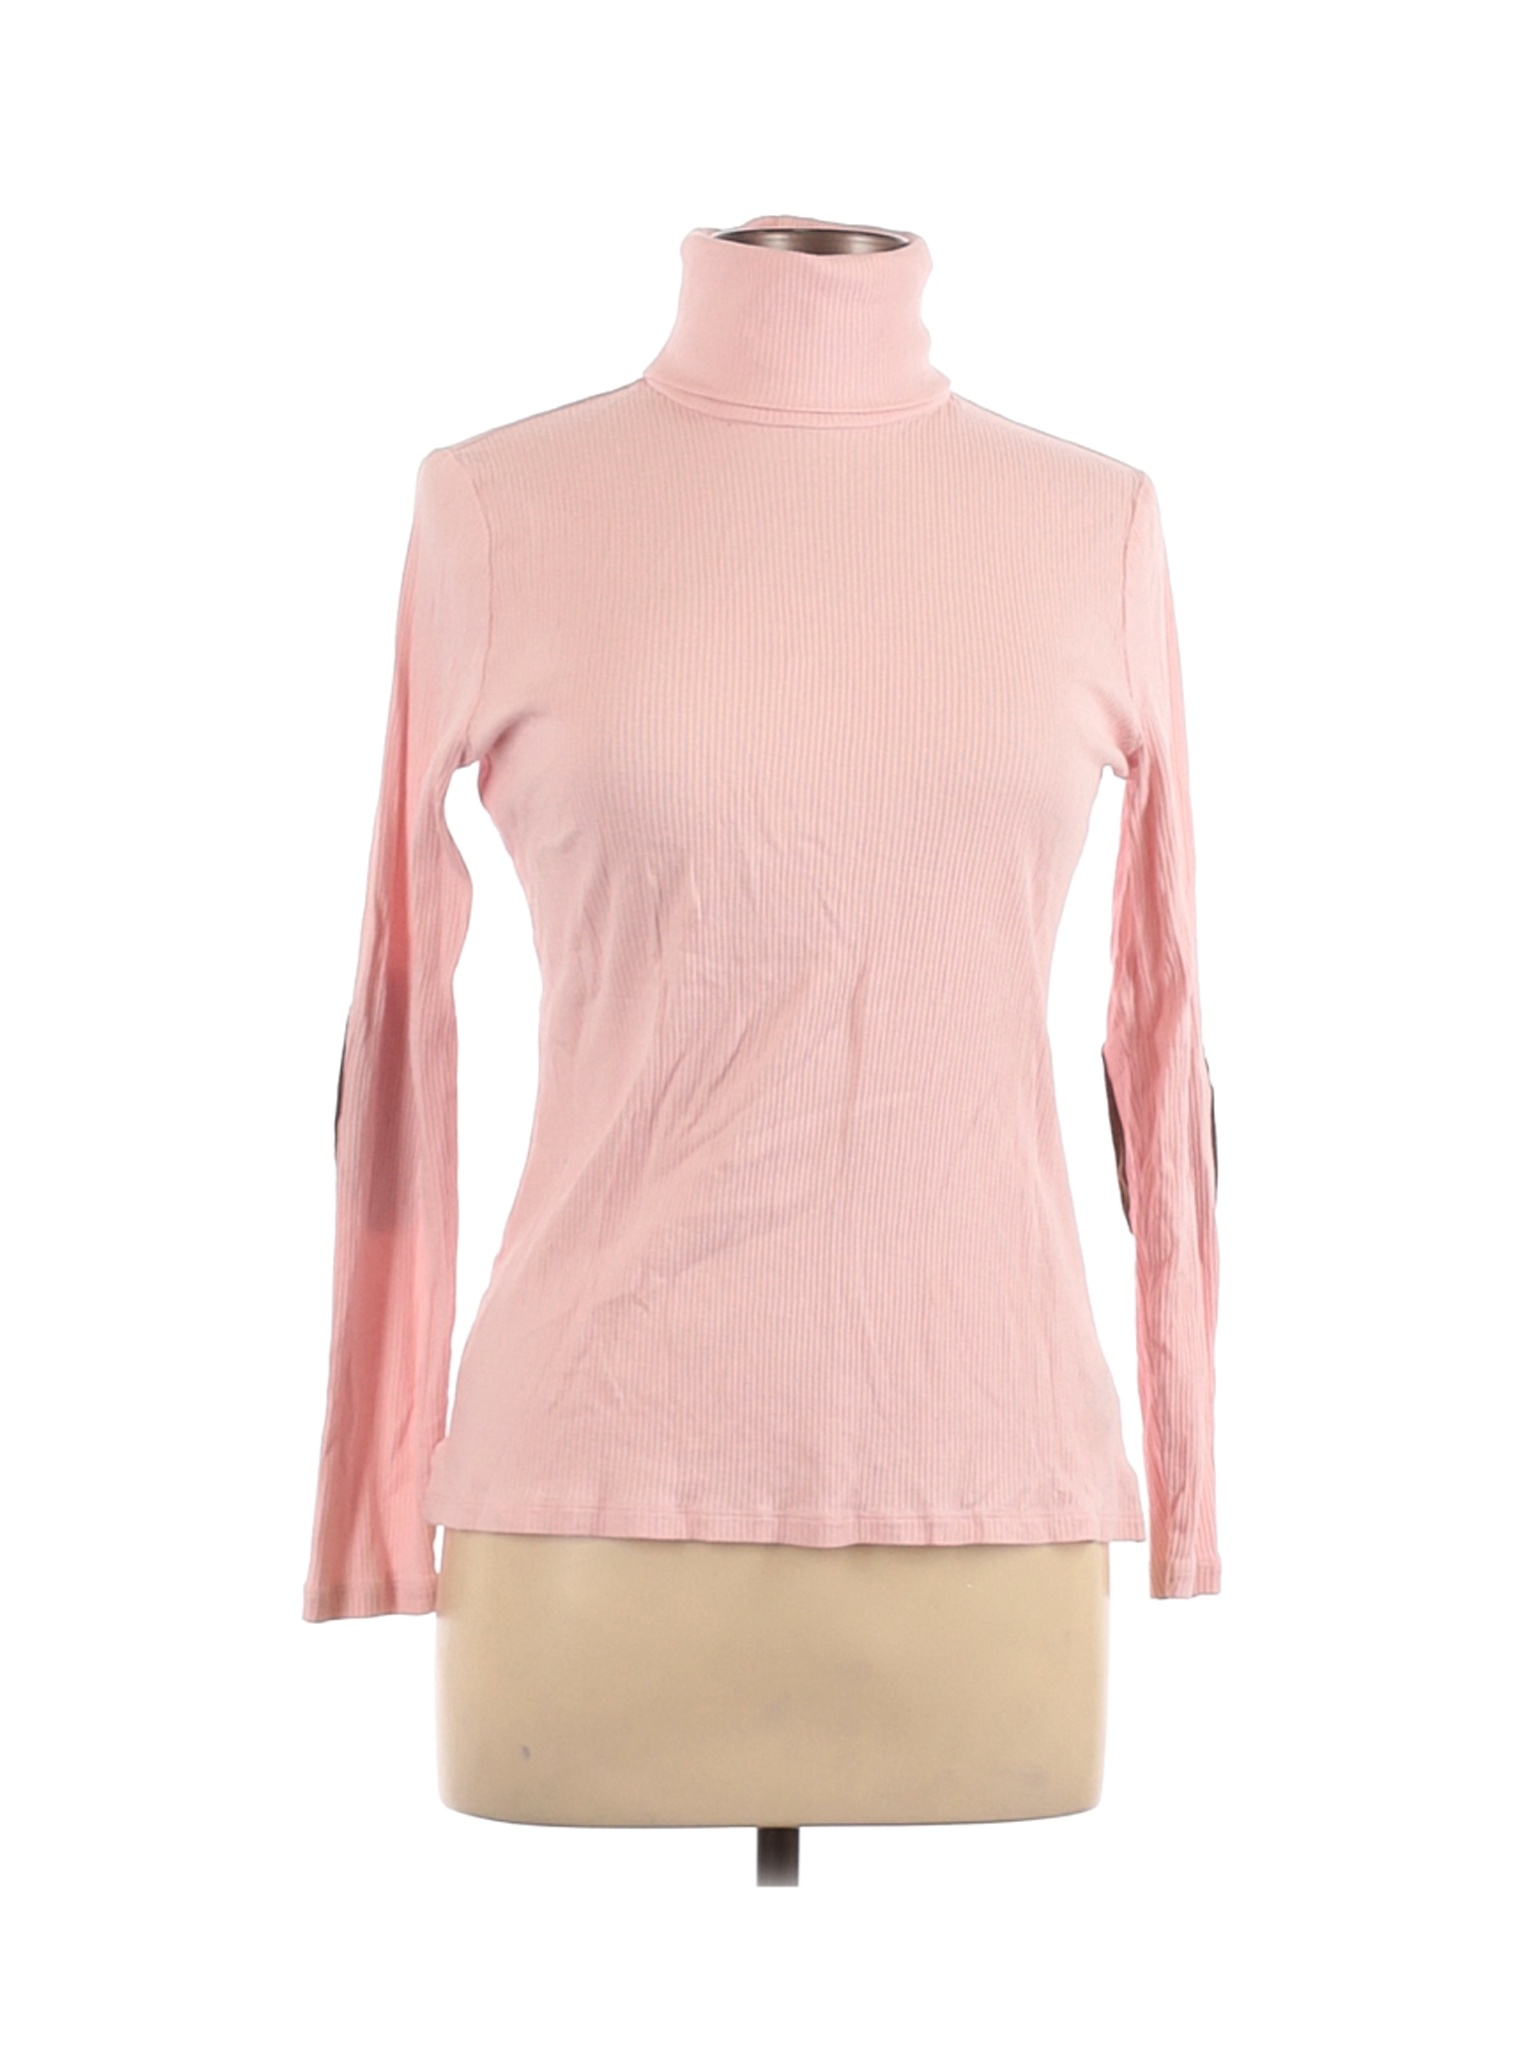 Lauren by Ralph Lauren Women Pink Long Sleeve Turtleneck L | eBay